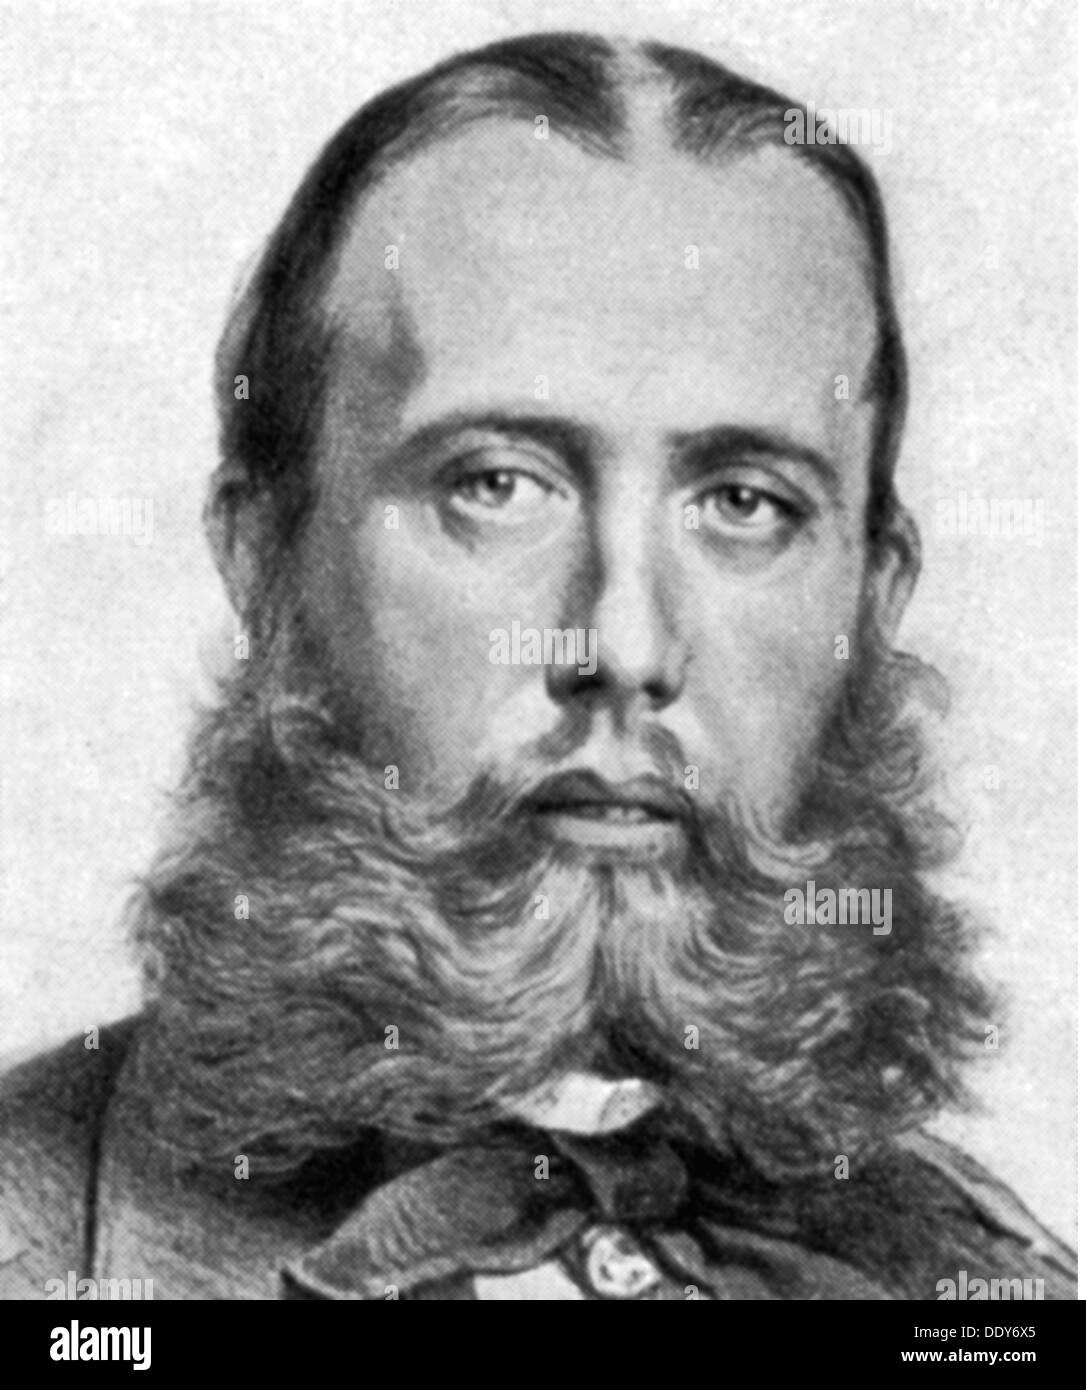 Massimiliano i, 6.6.1832 - 19.6.1867, imperatore del Messico 10.4.1864 - 14.5.1867, ritratto, disegno, da: Grosser Brockhaus, circa 1900, Foto Stock